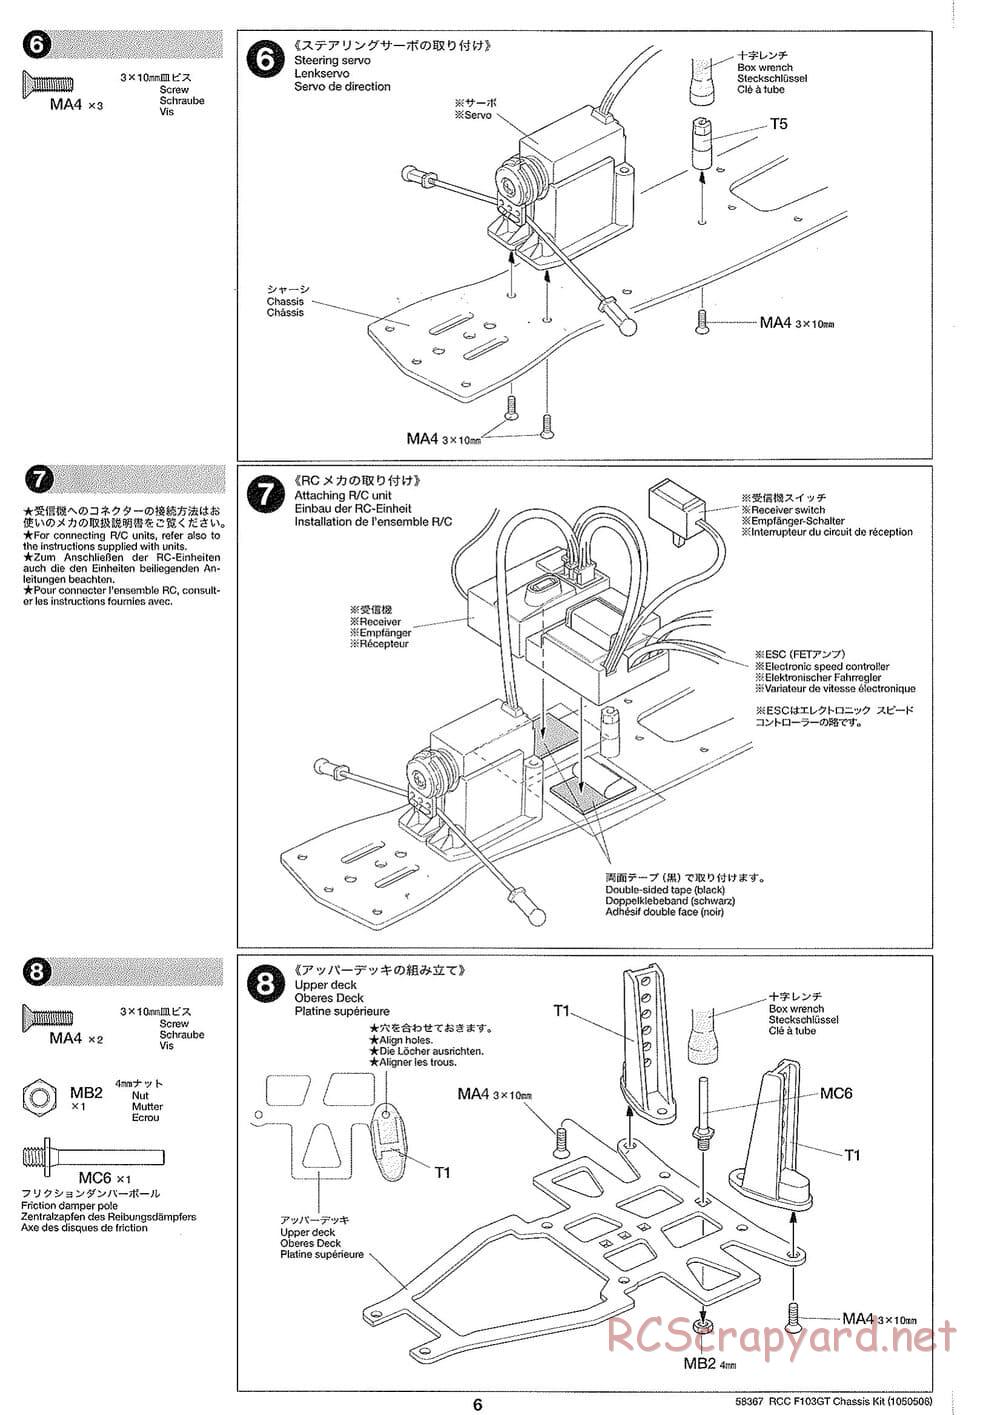 Tamiya - F103GT Chassis Kit - Manual - Page 6